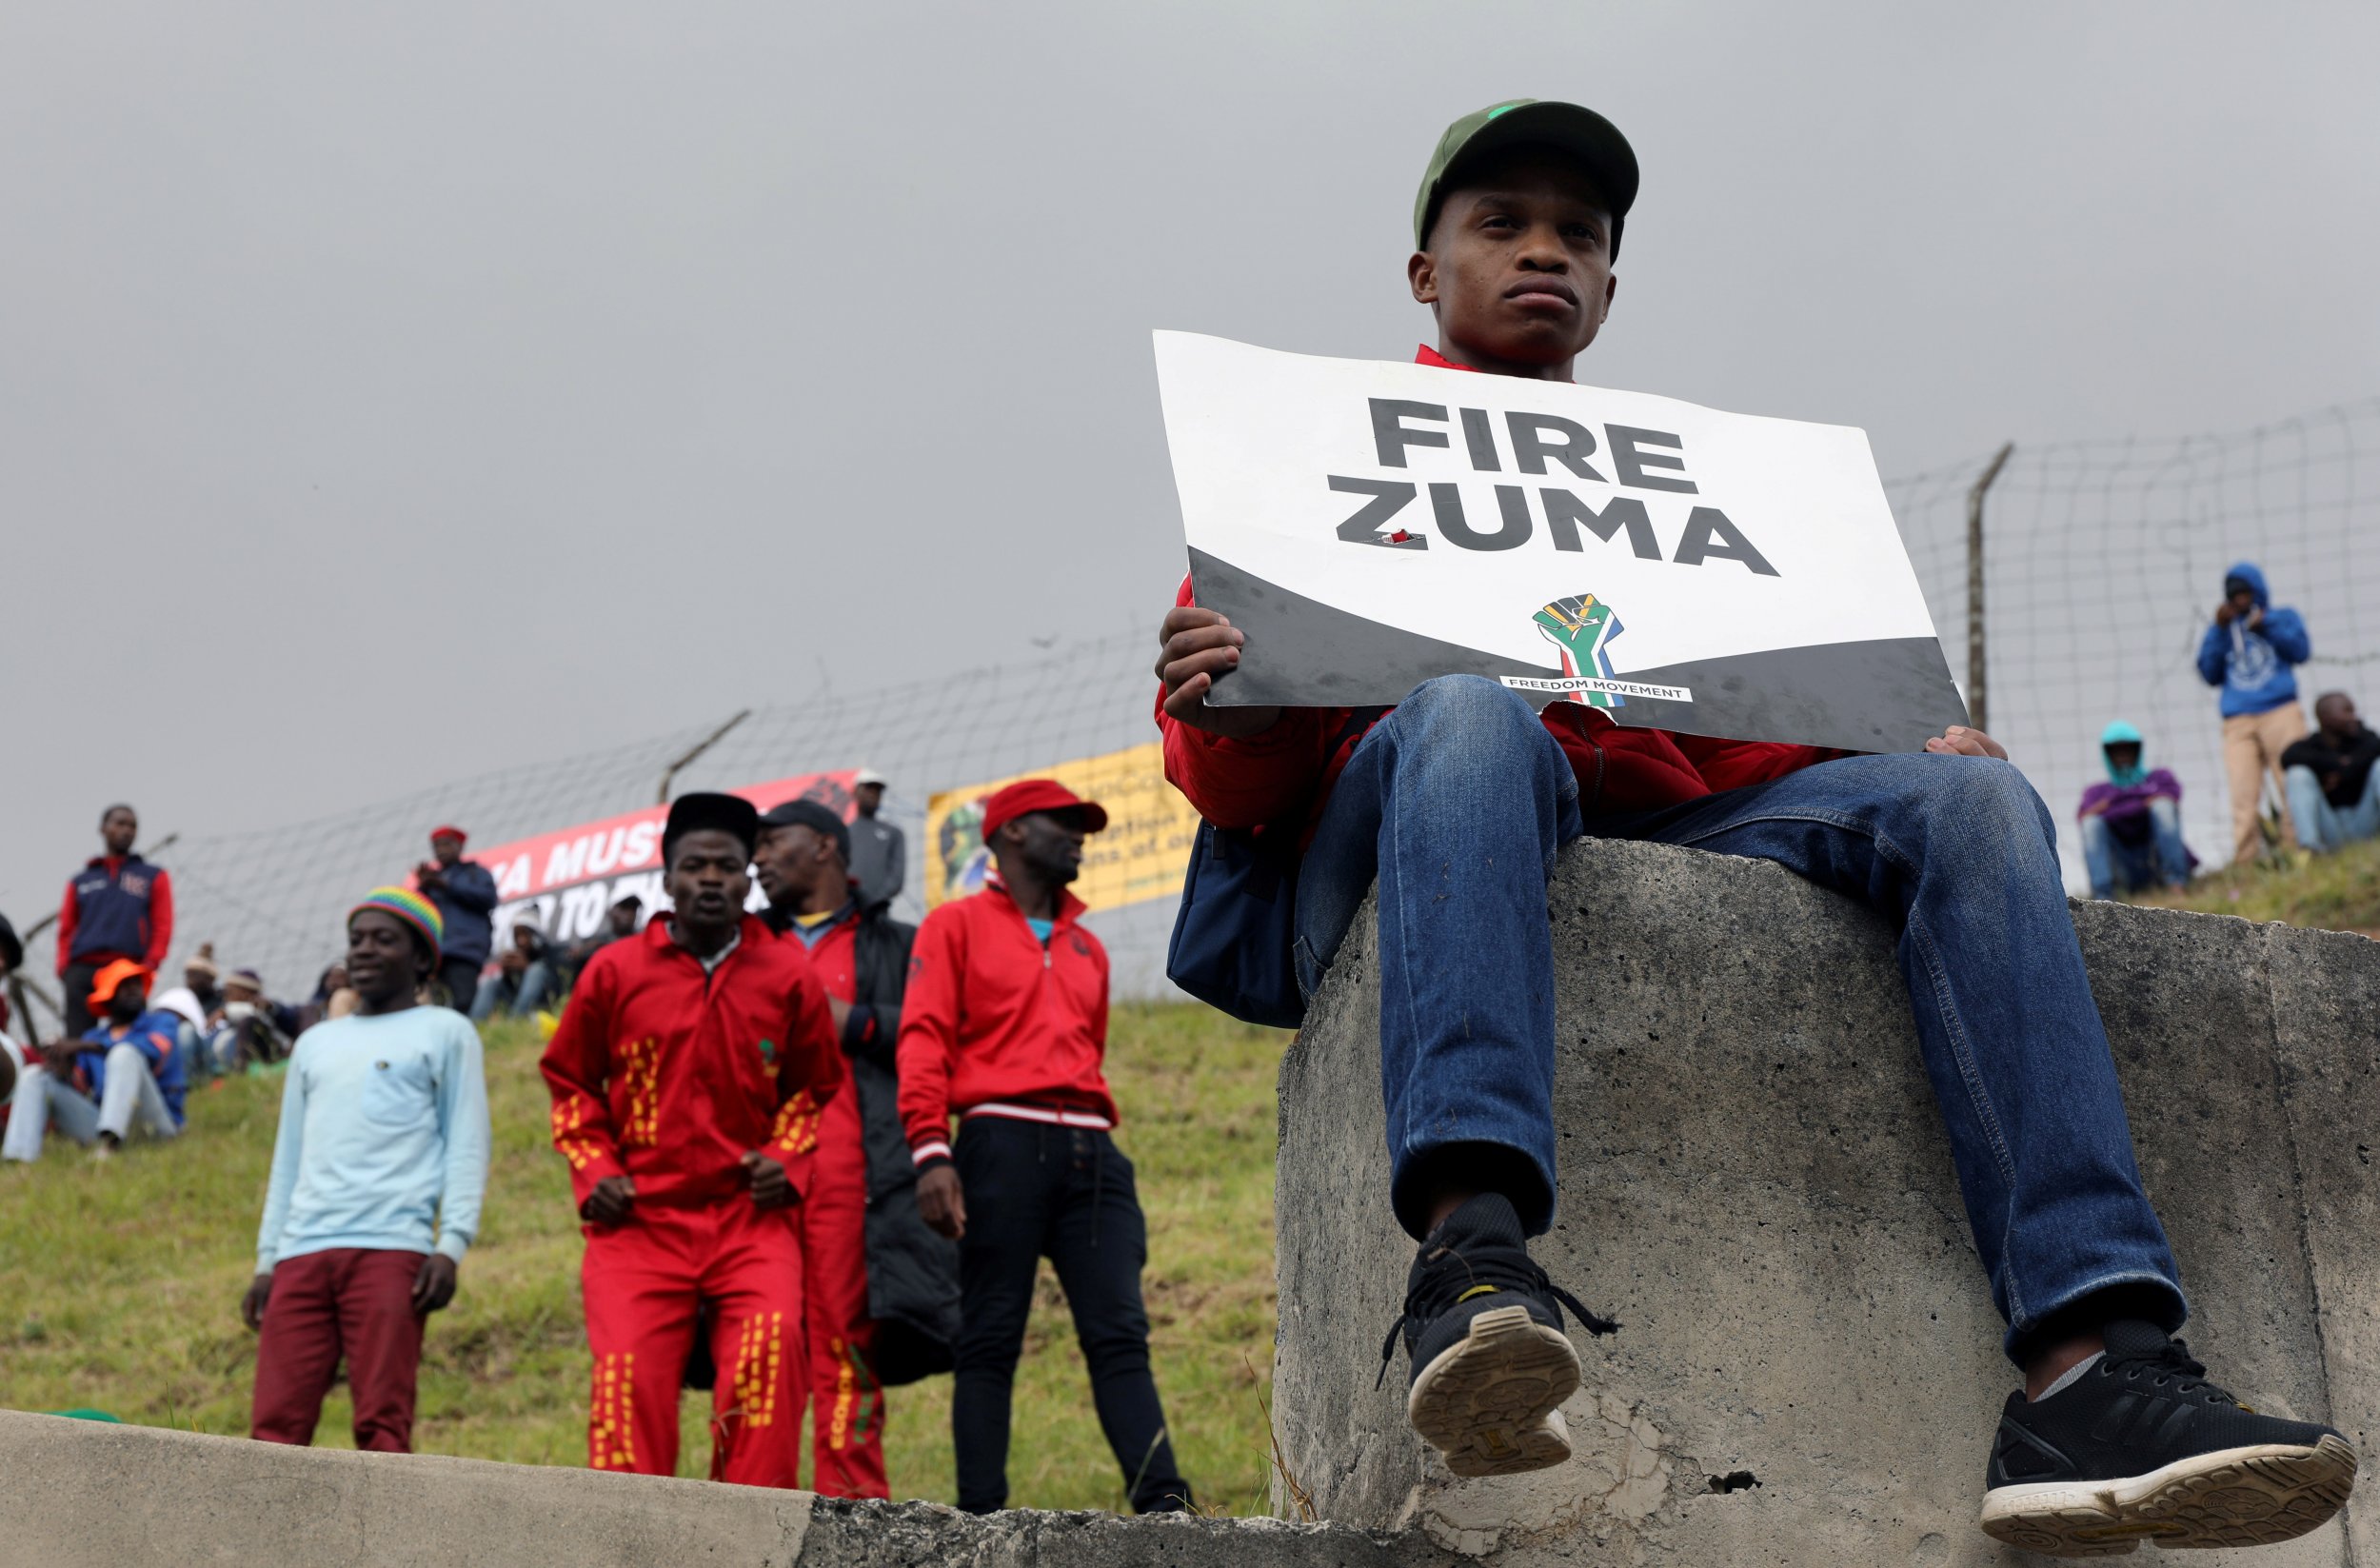 Zuma protesters